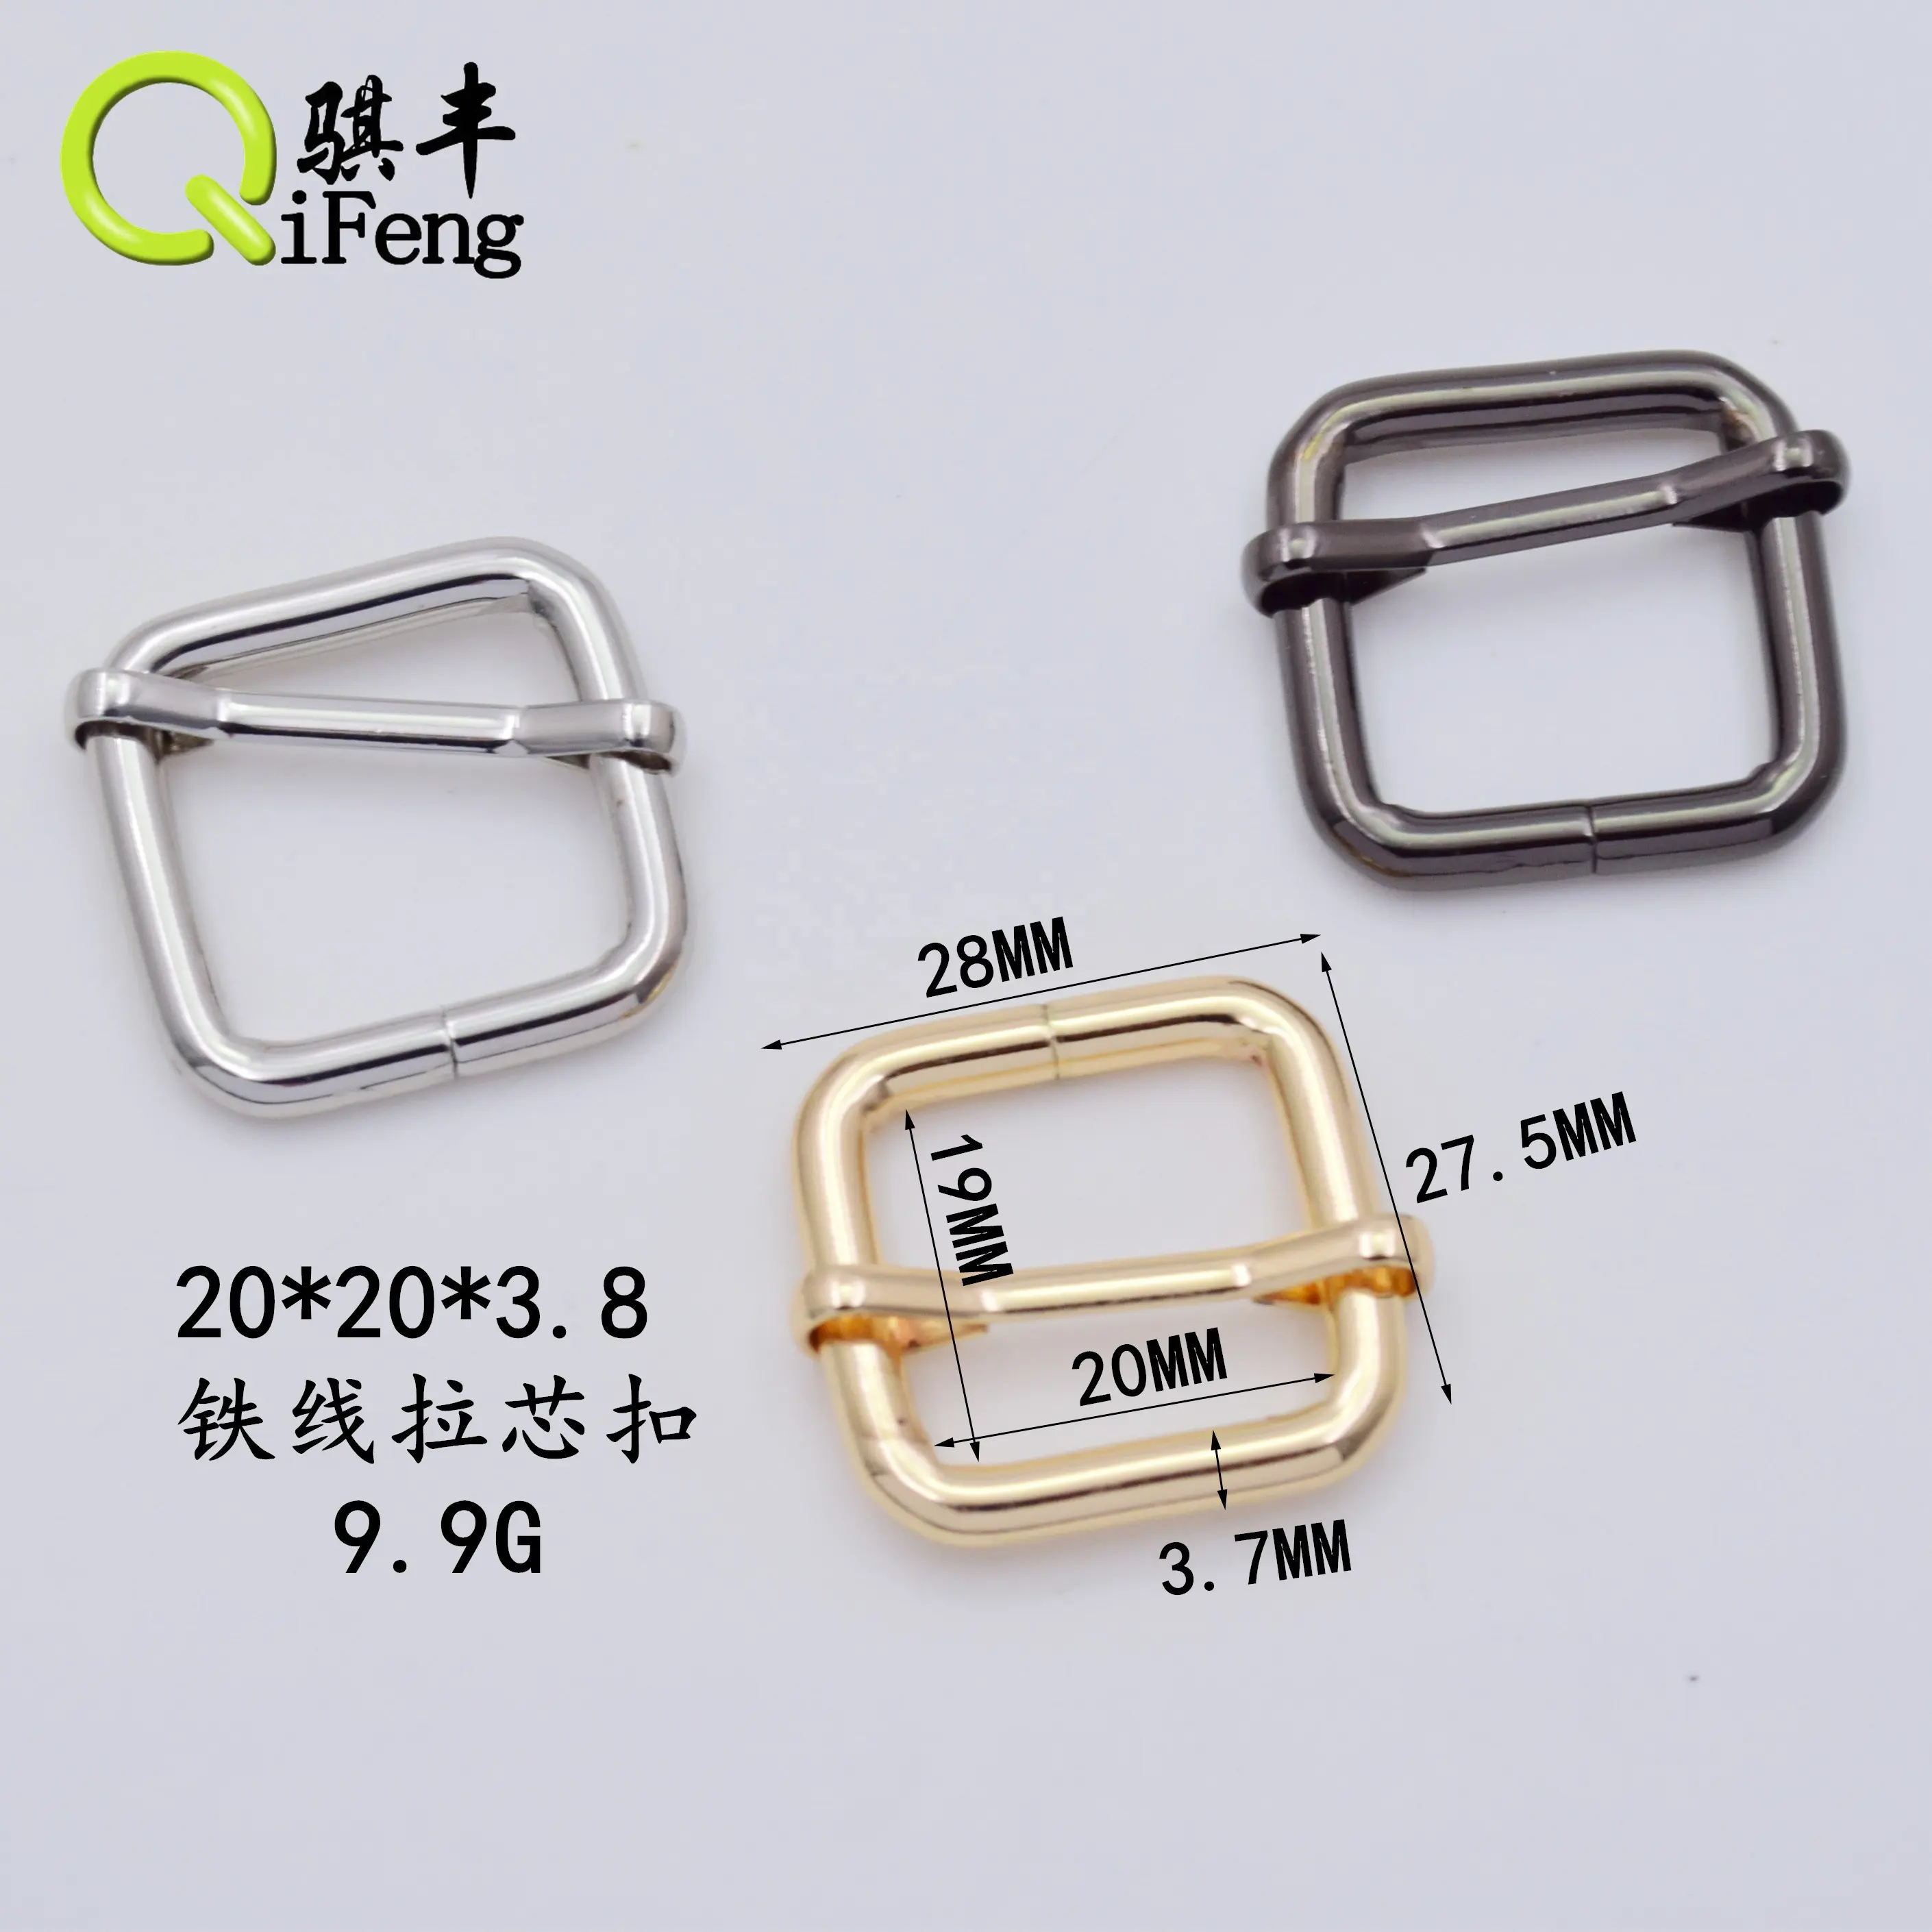 Qifeng 13-50 mm Einstellschraube Zahnbeutel Hardwarezubehör quadratisch rechteckig dreiradregelbarer einstellbarer Walzen-Spin-Schnalle für Kleidung